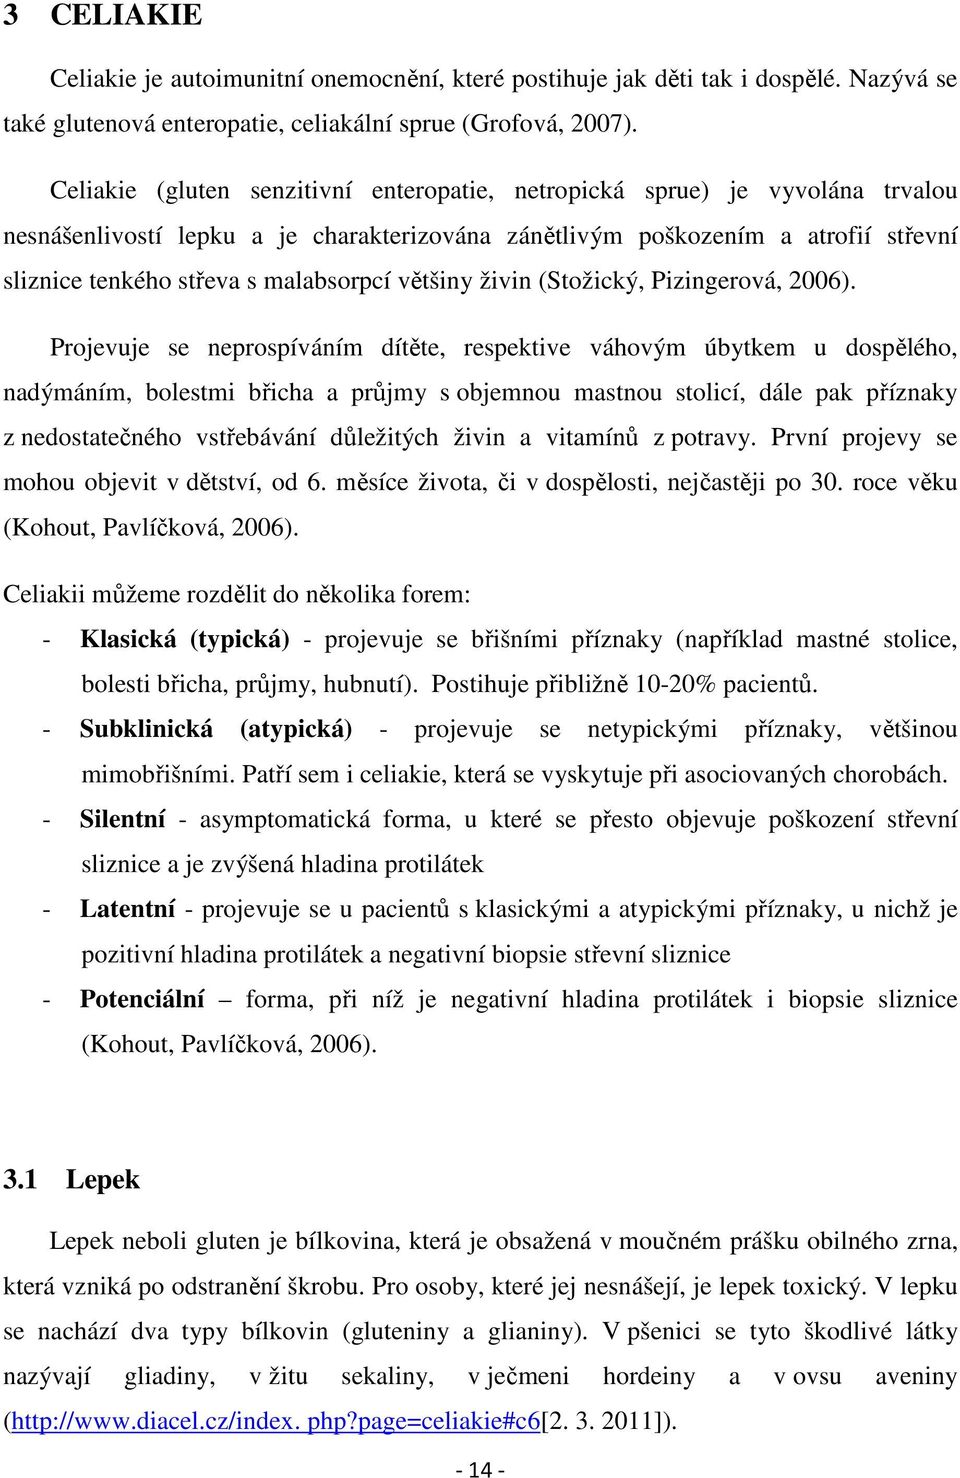 malabsorpcí většiny živin (Stožický, Pizingerová, 2006).